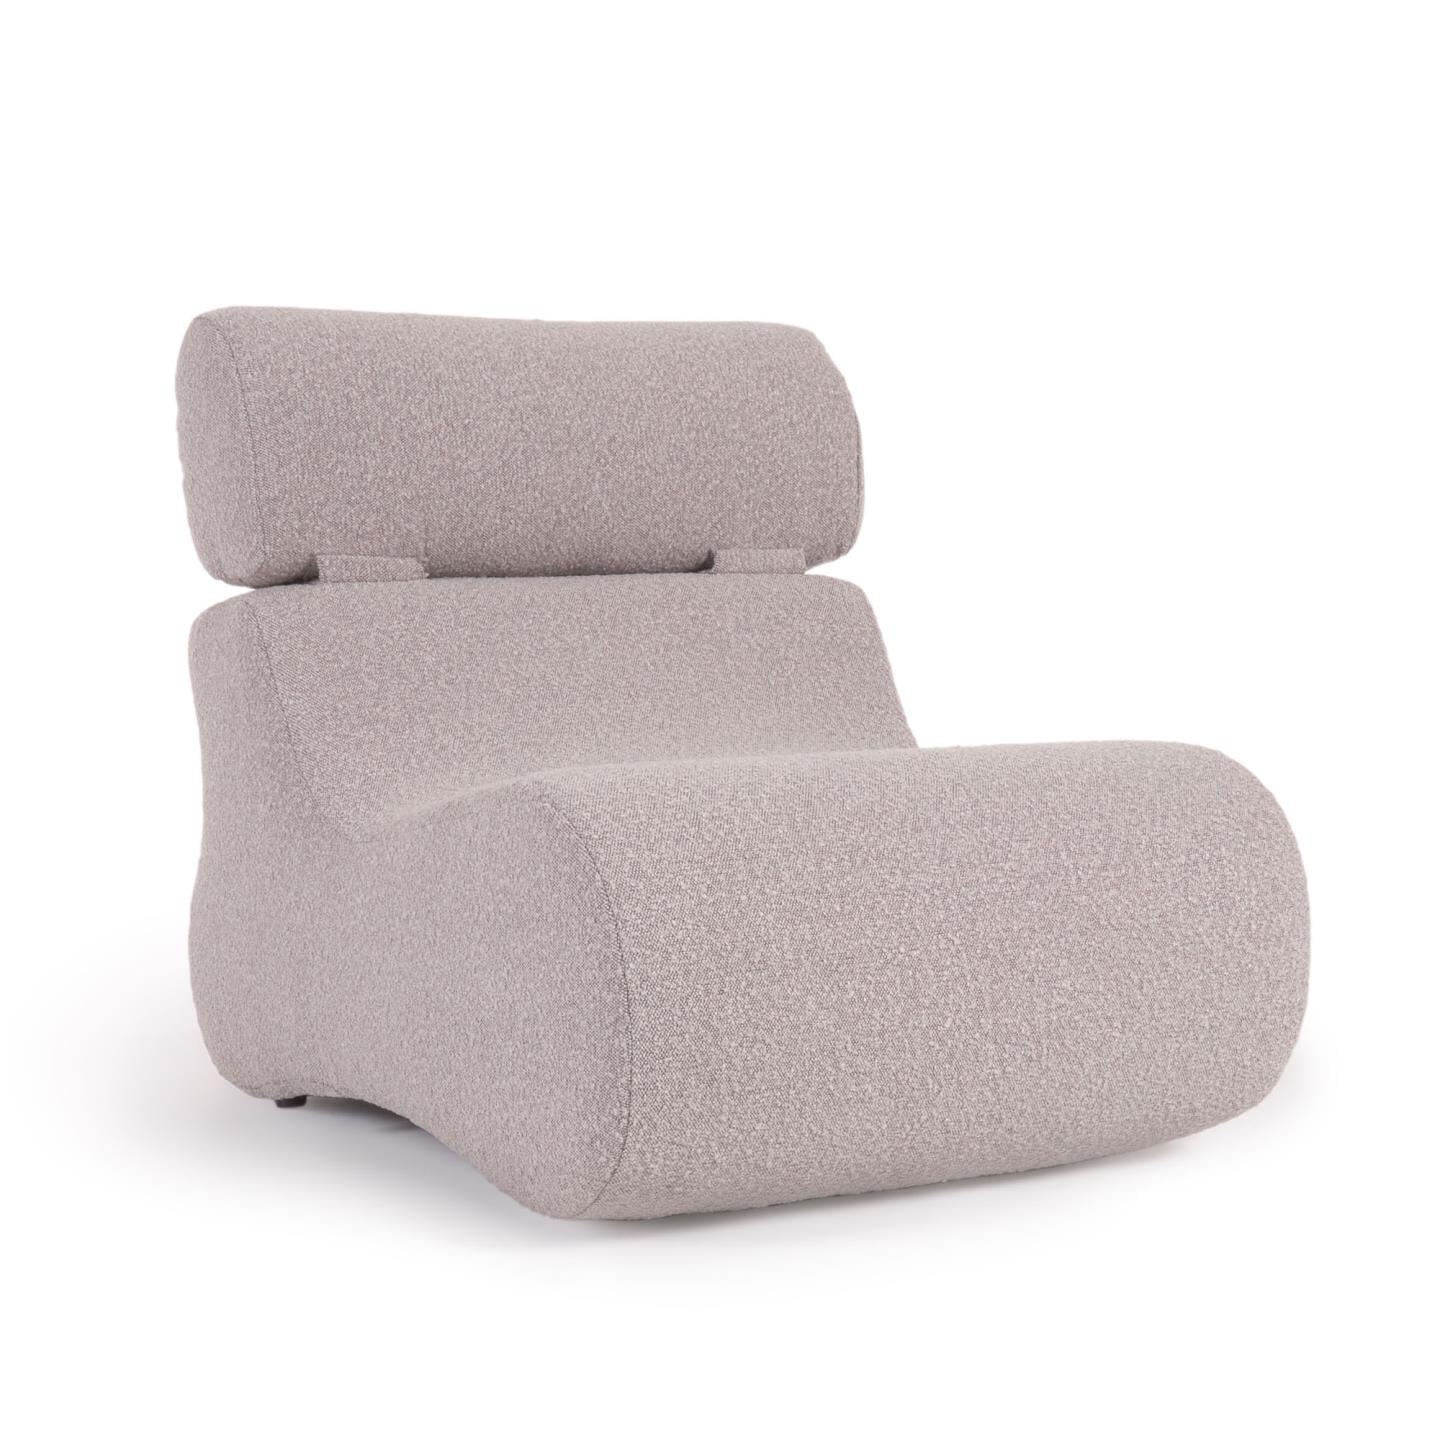 Kave Home - Club fauteuil in lichtgrijze schapenvacht